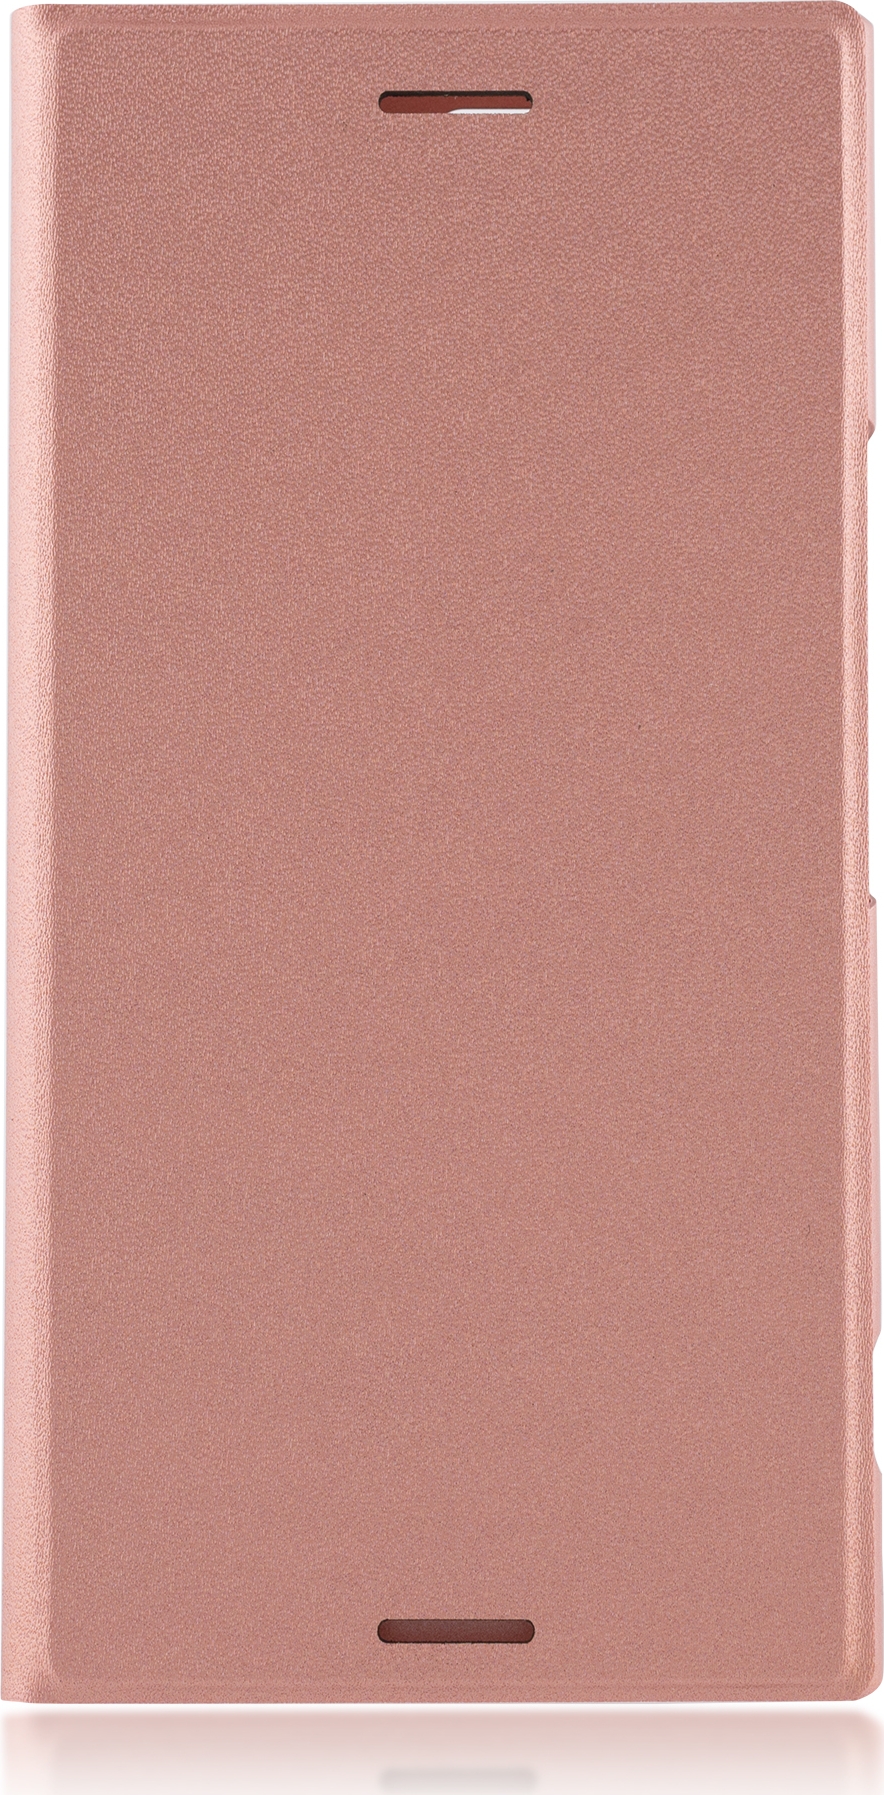 Чехол Brosco Book для Sony Xperia XZ Premium, розовый